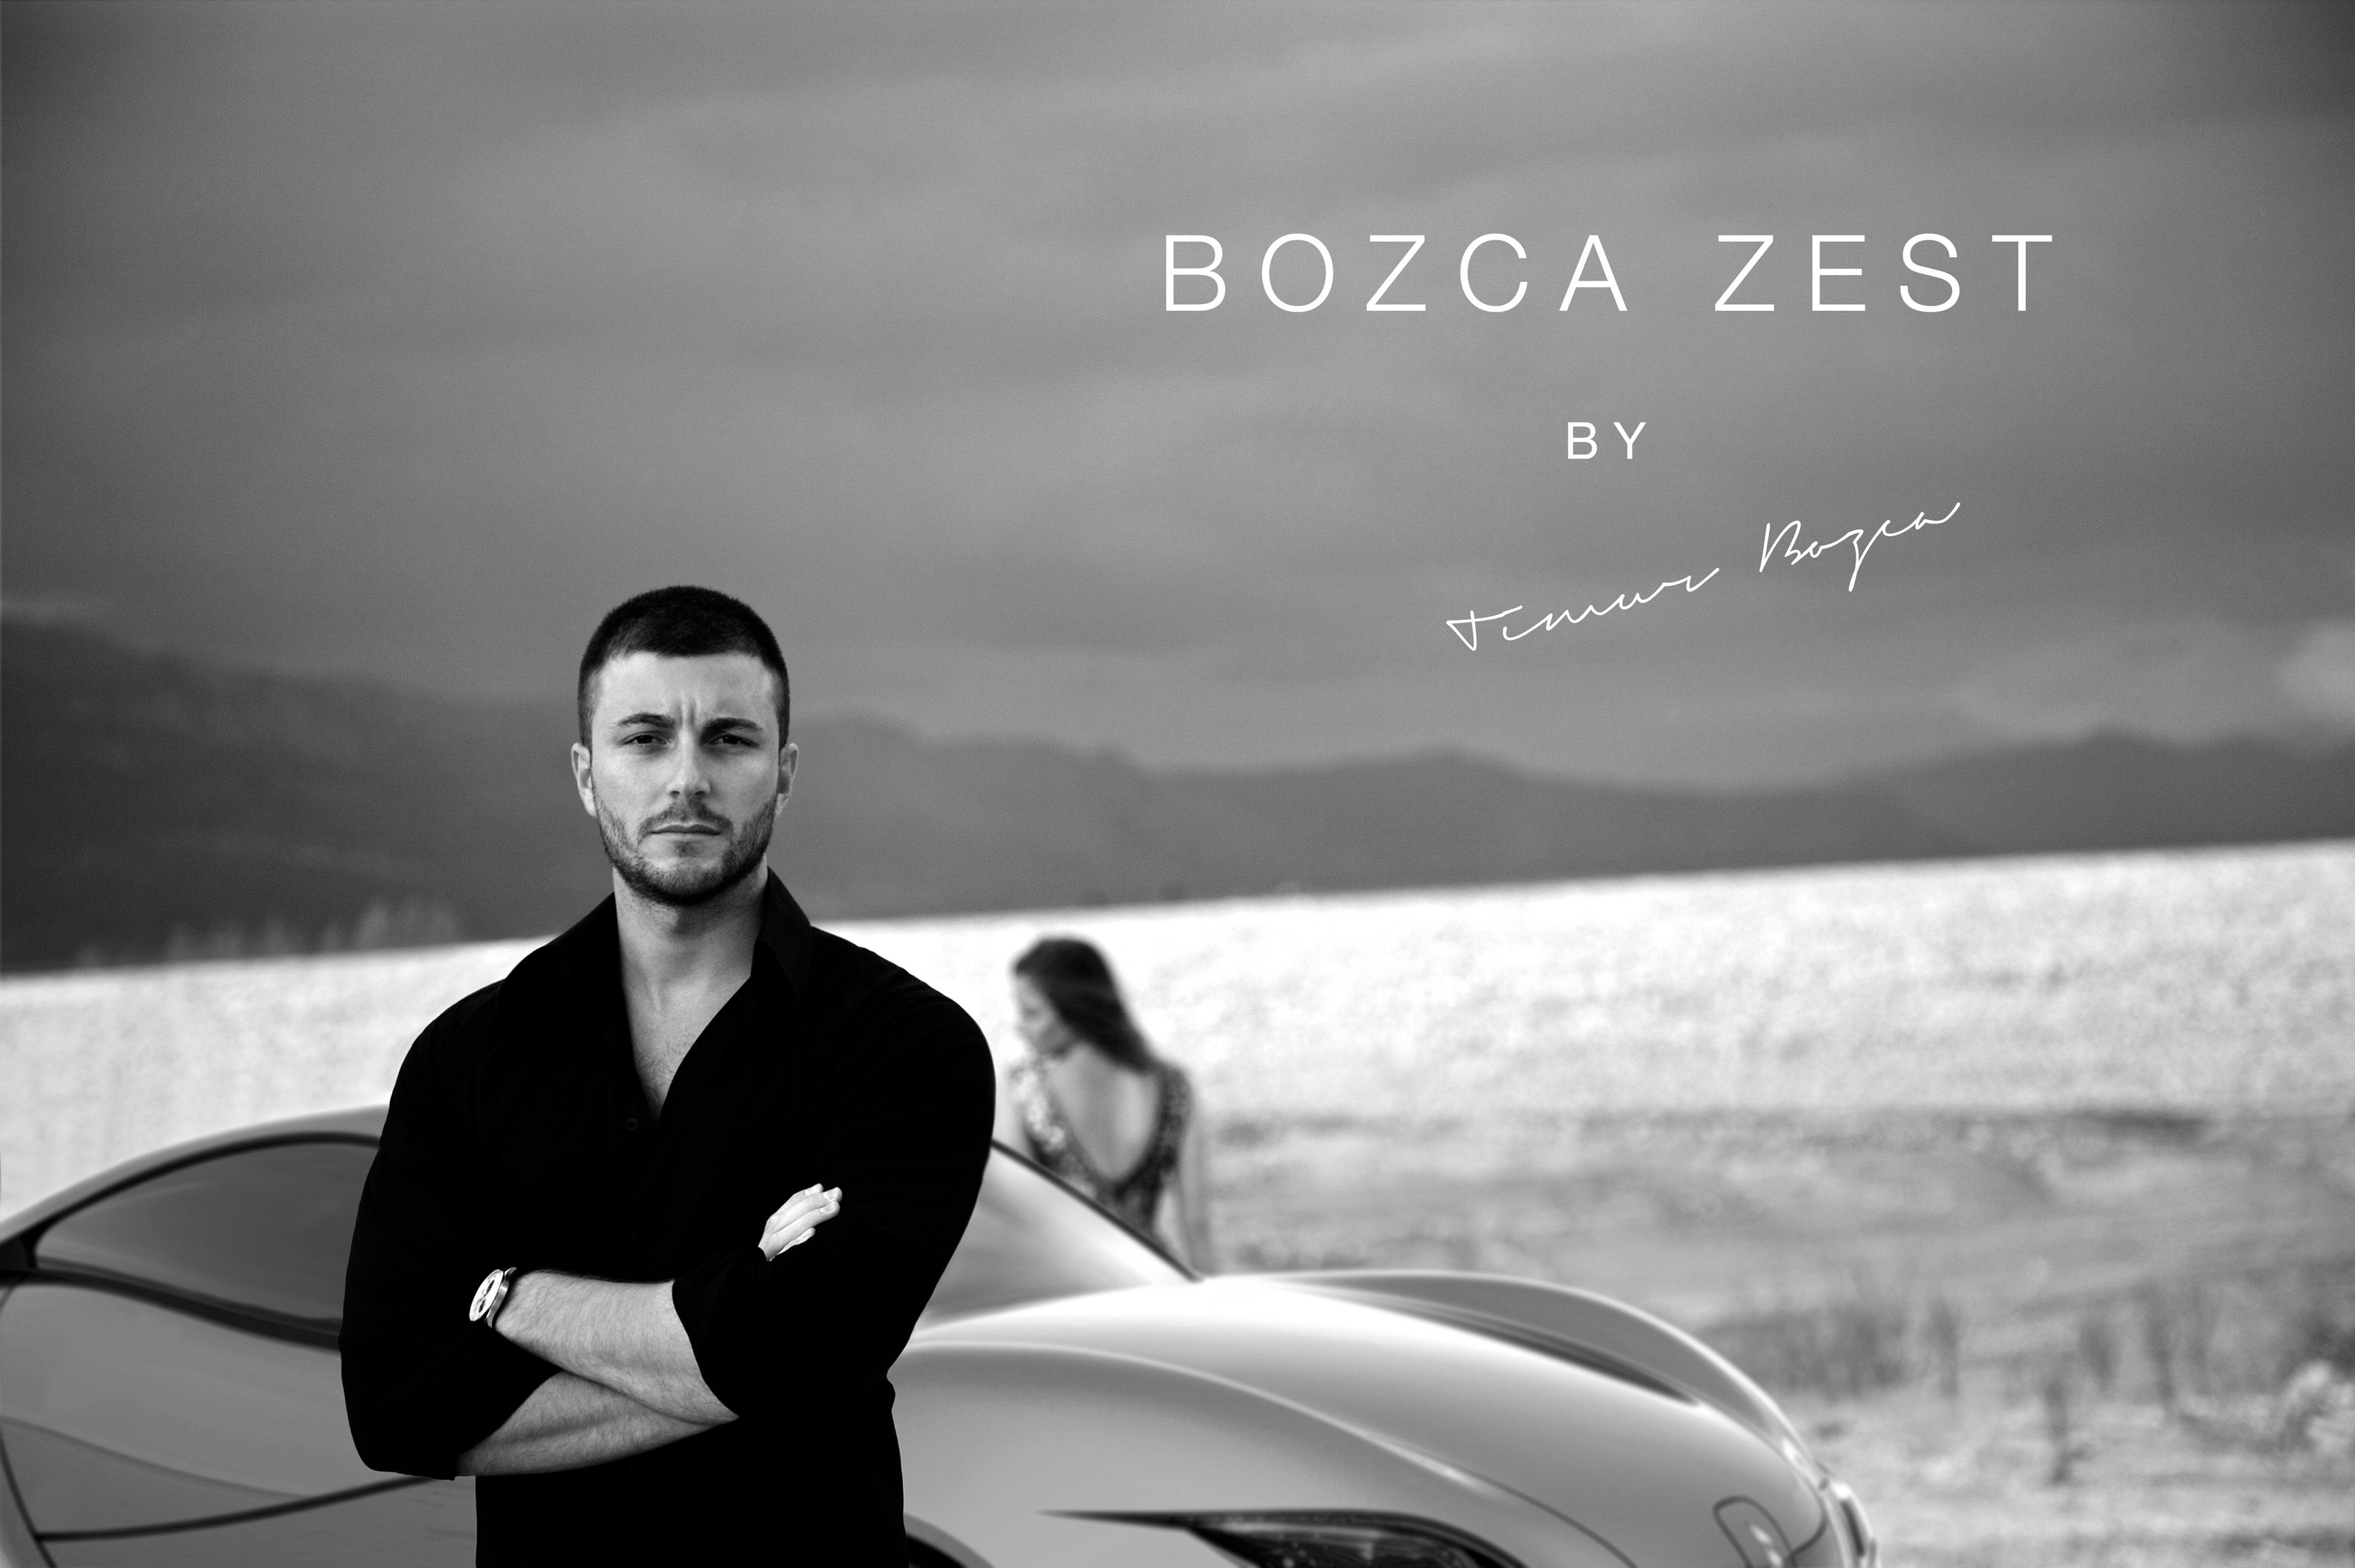 2013 Bozca Zest Concept